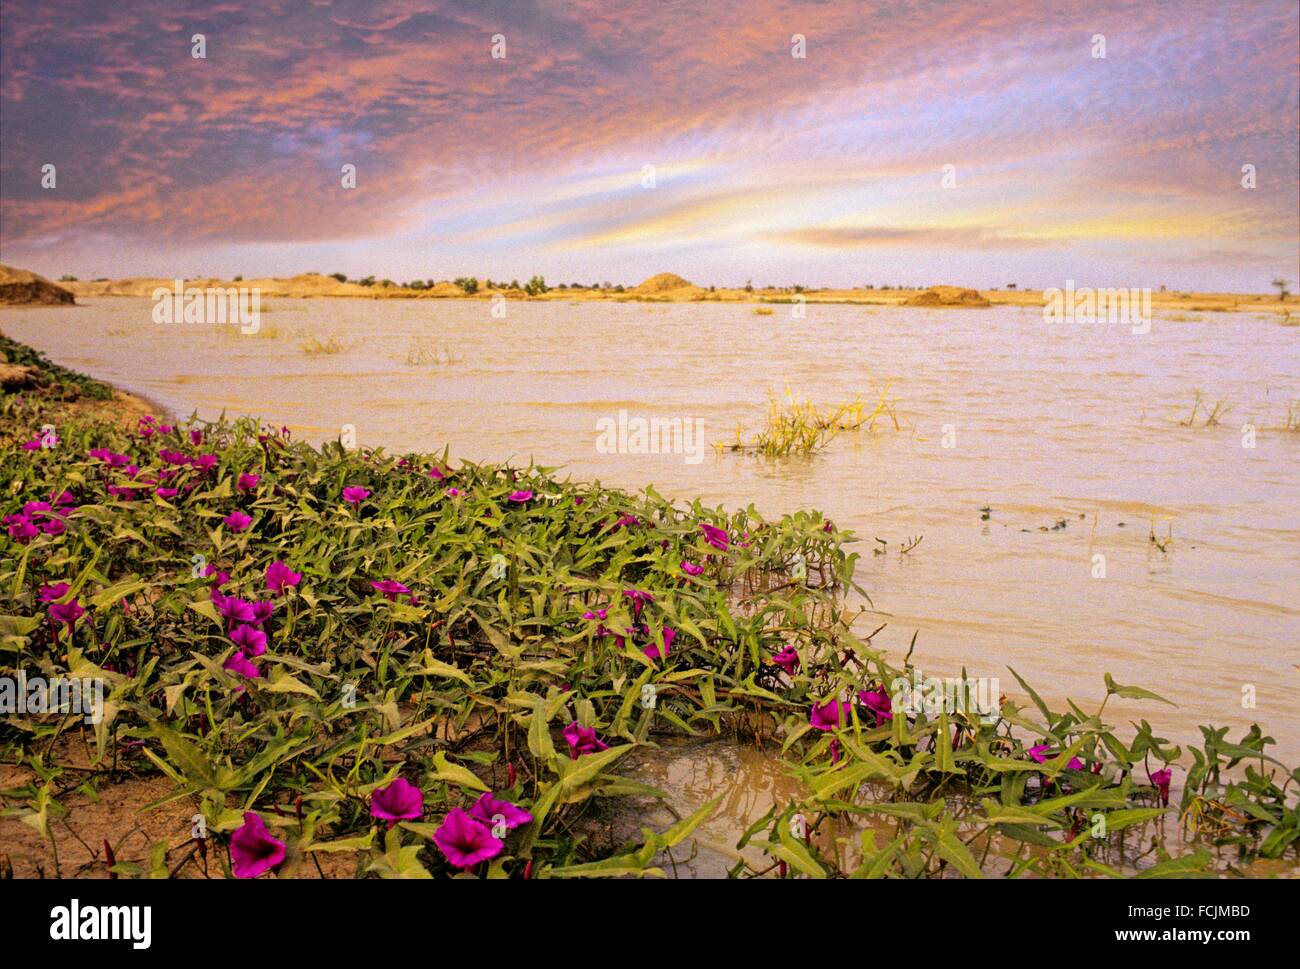 El lago Chad, en África Central. Foto de stock